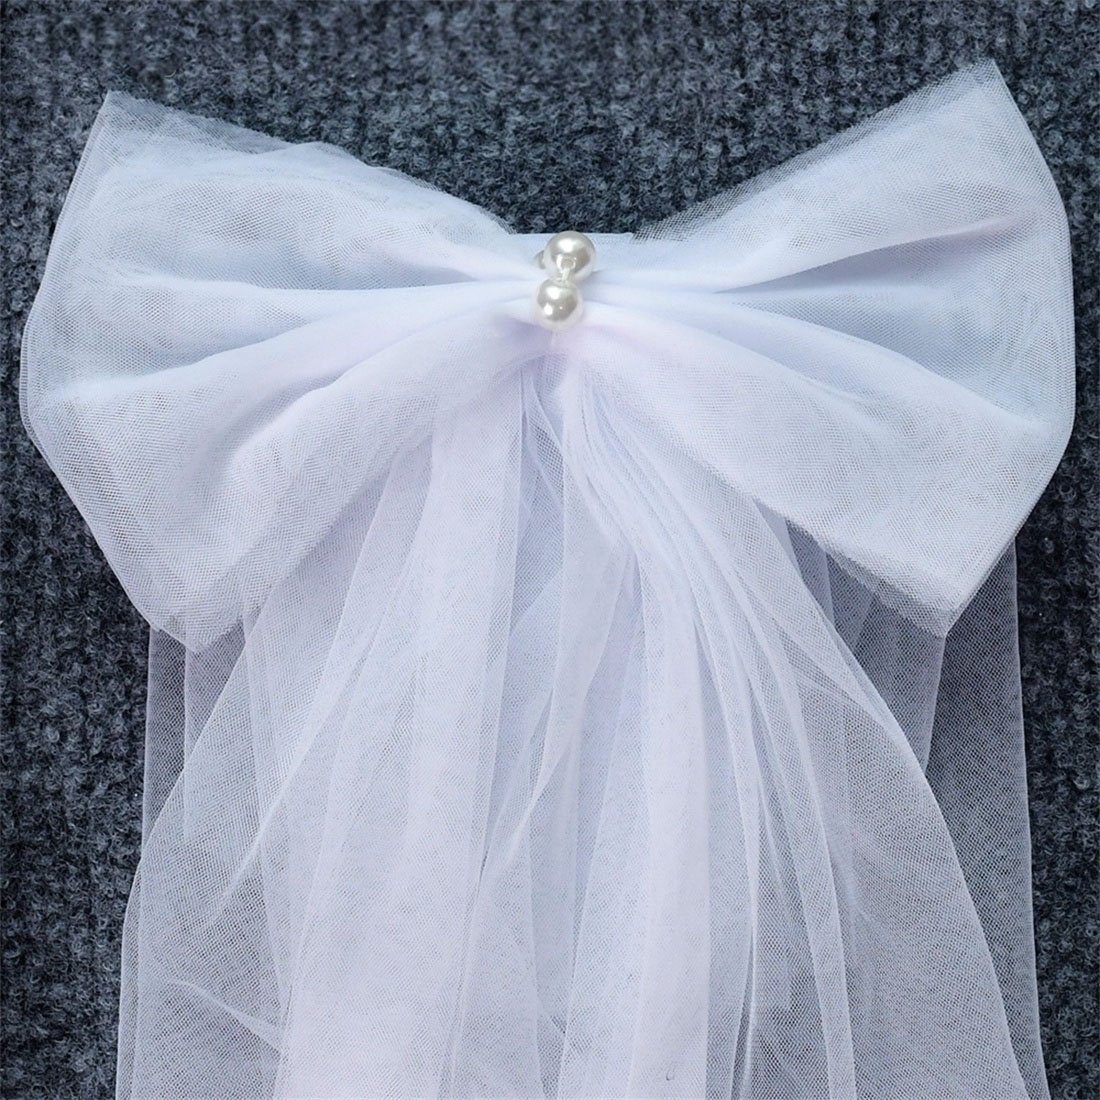 DÖRÖY Schleier Schleifenbänder Braut, die Hochzeitsschals für Accessoires für